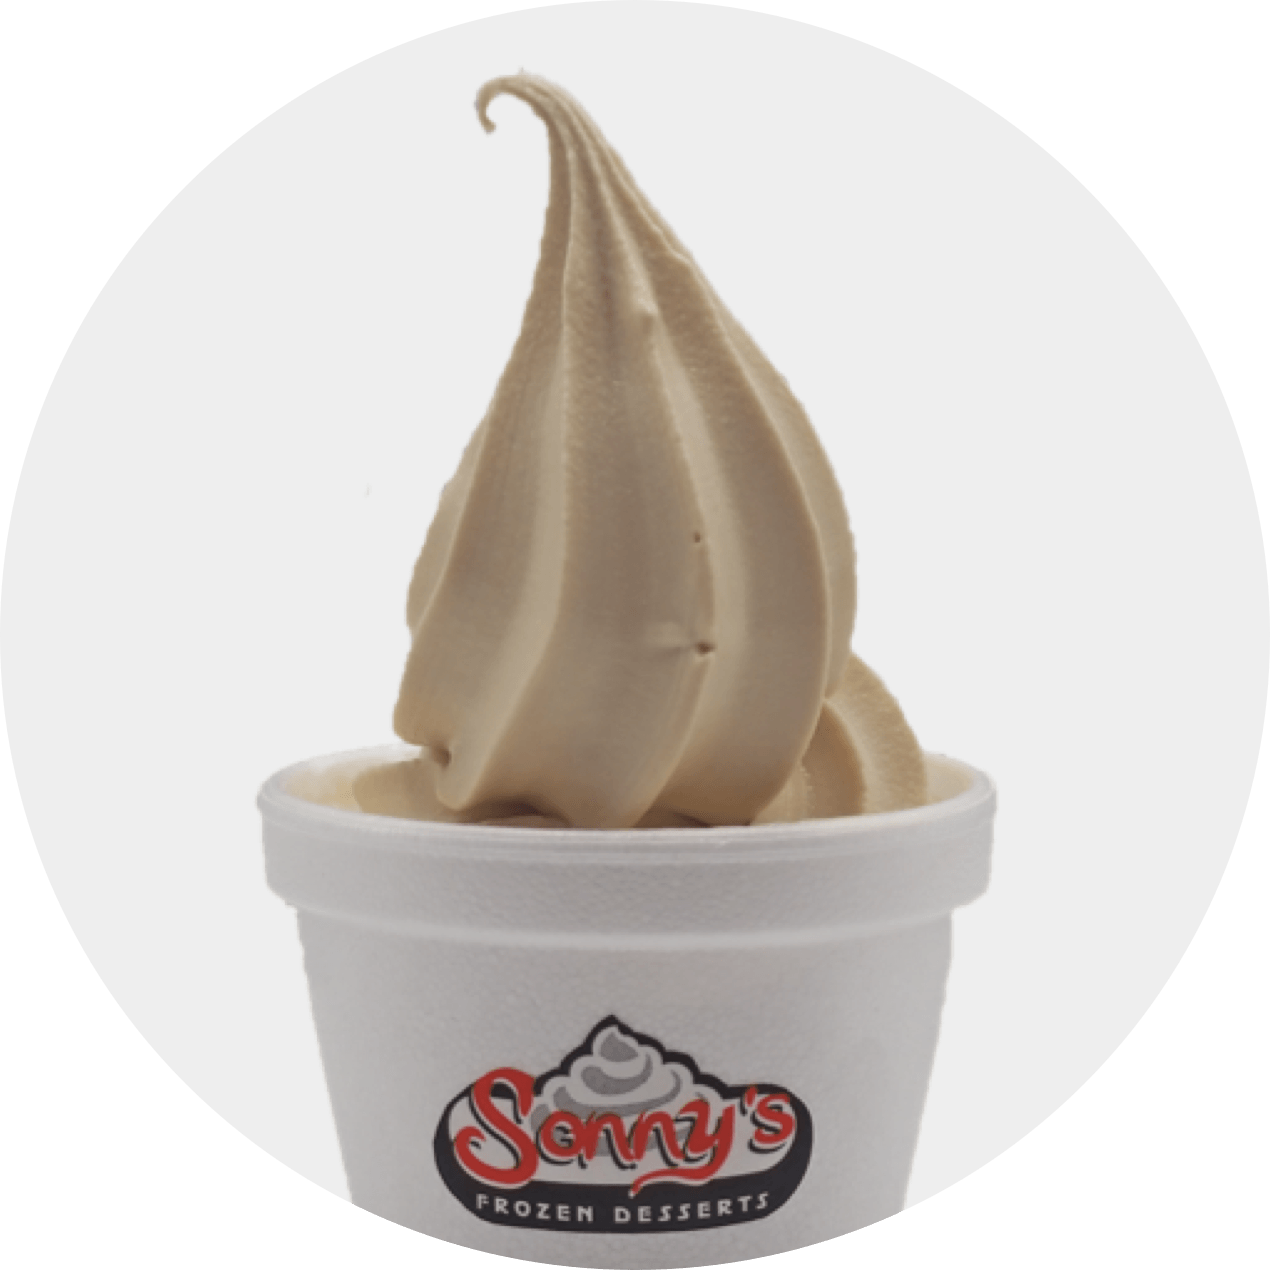 Frozen Yogurt Rankings - Peanut Butter Fingers